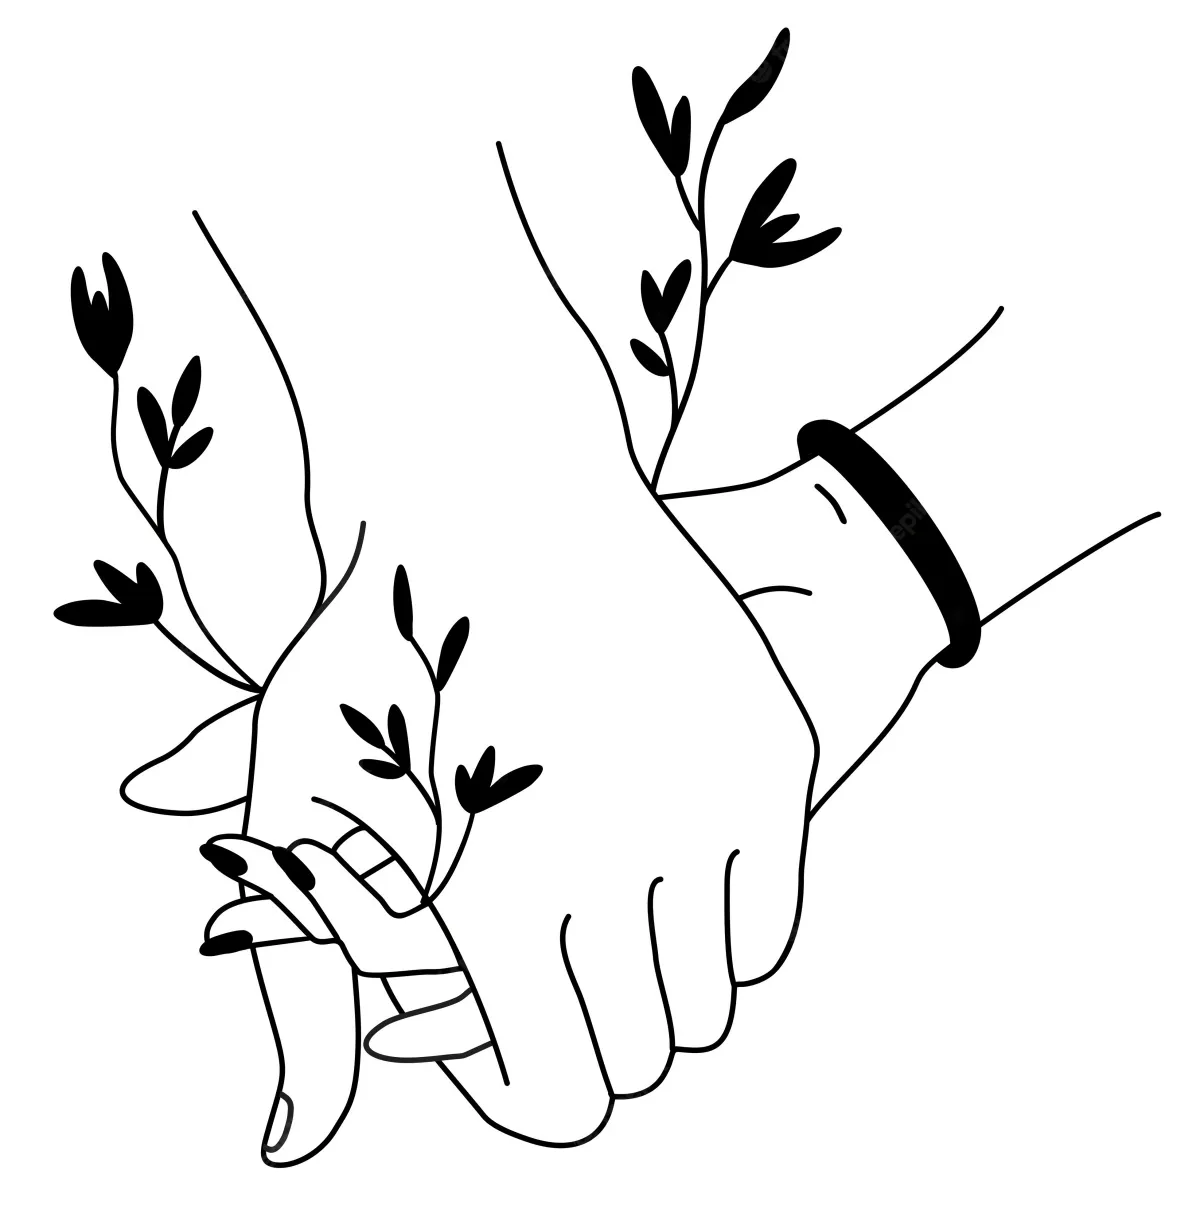 deux mains expriment une union forte avec un graphisme de noir sur blenc